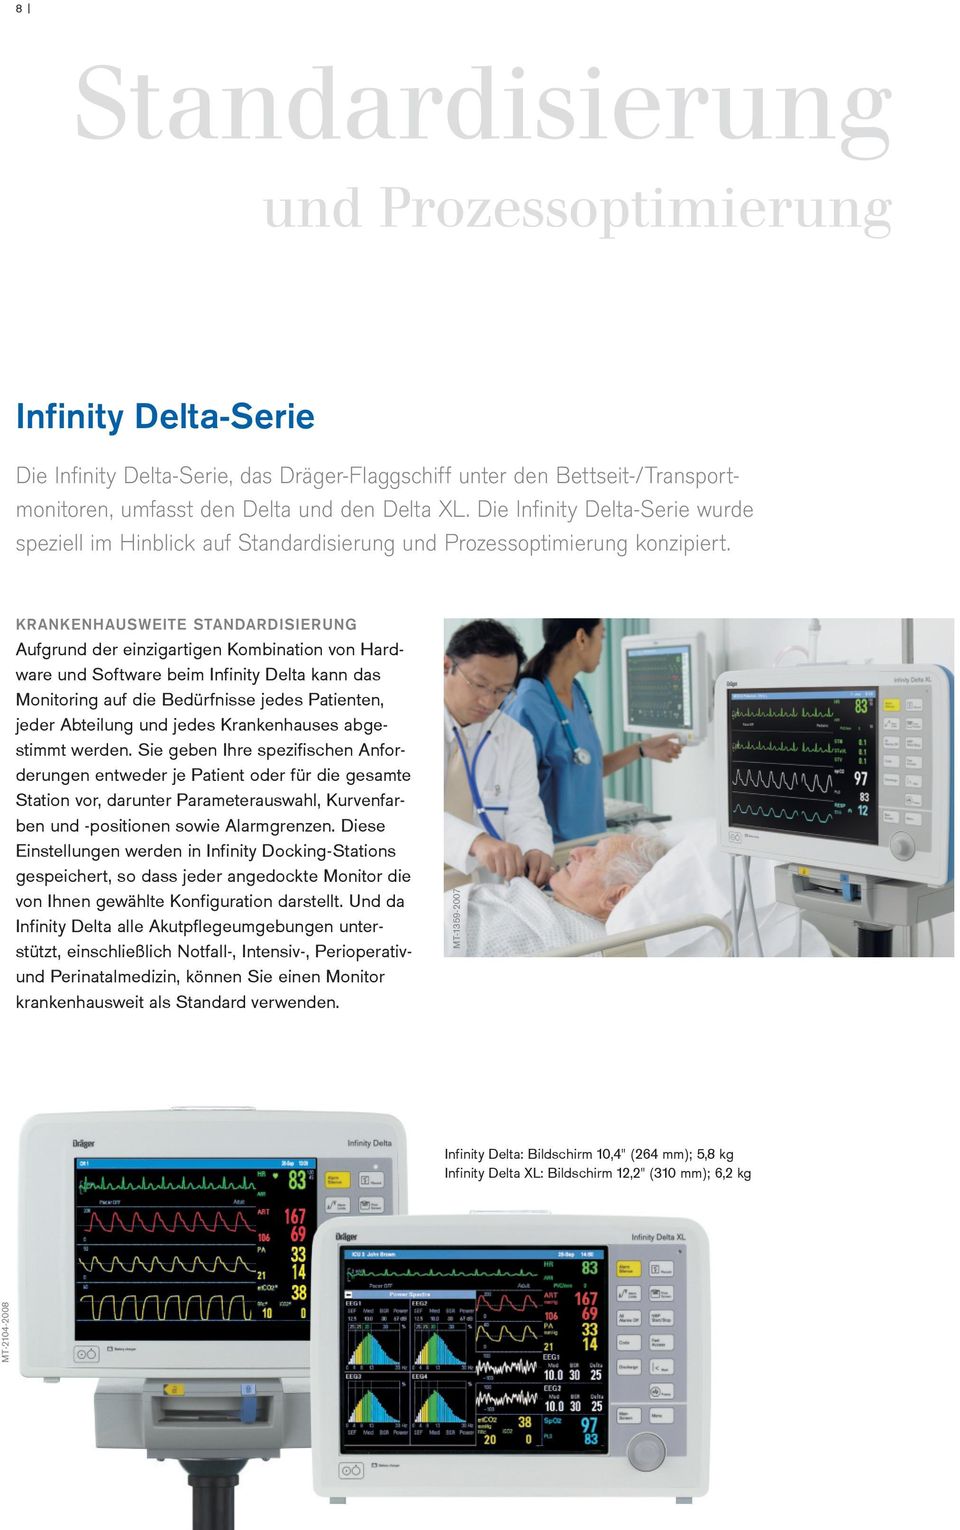 KRANKENHAUSWEITE STANDARDISIERUNG Aufgrund der einzigartigen Kombination von Hardware und Software beim Infinity Delta kann das Monitoring auf die Bedürfnisse jedes Patienten, jeder Abteilung und